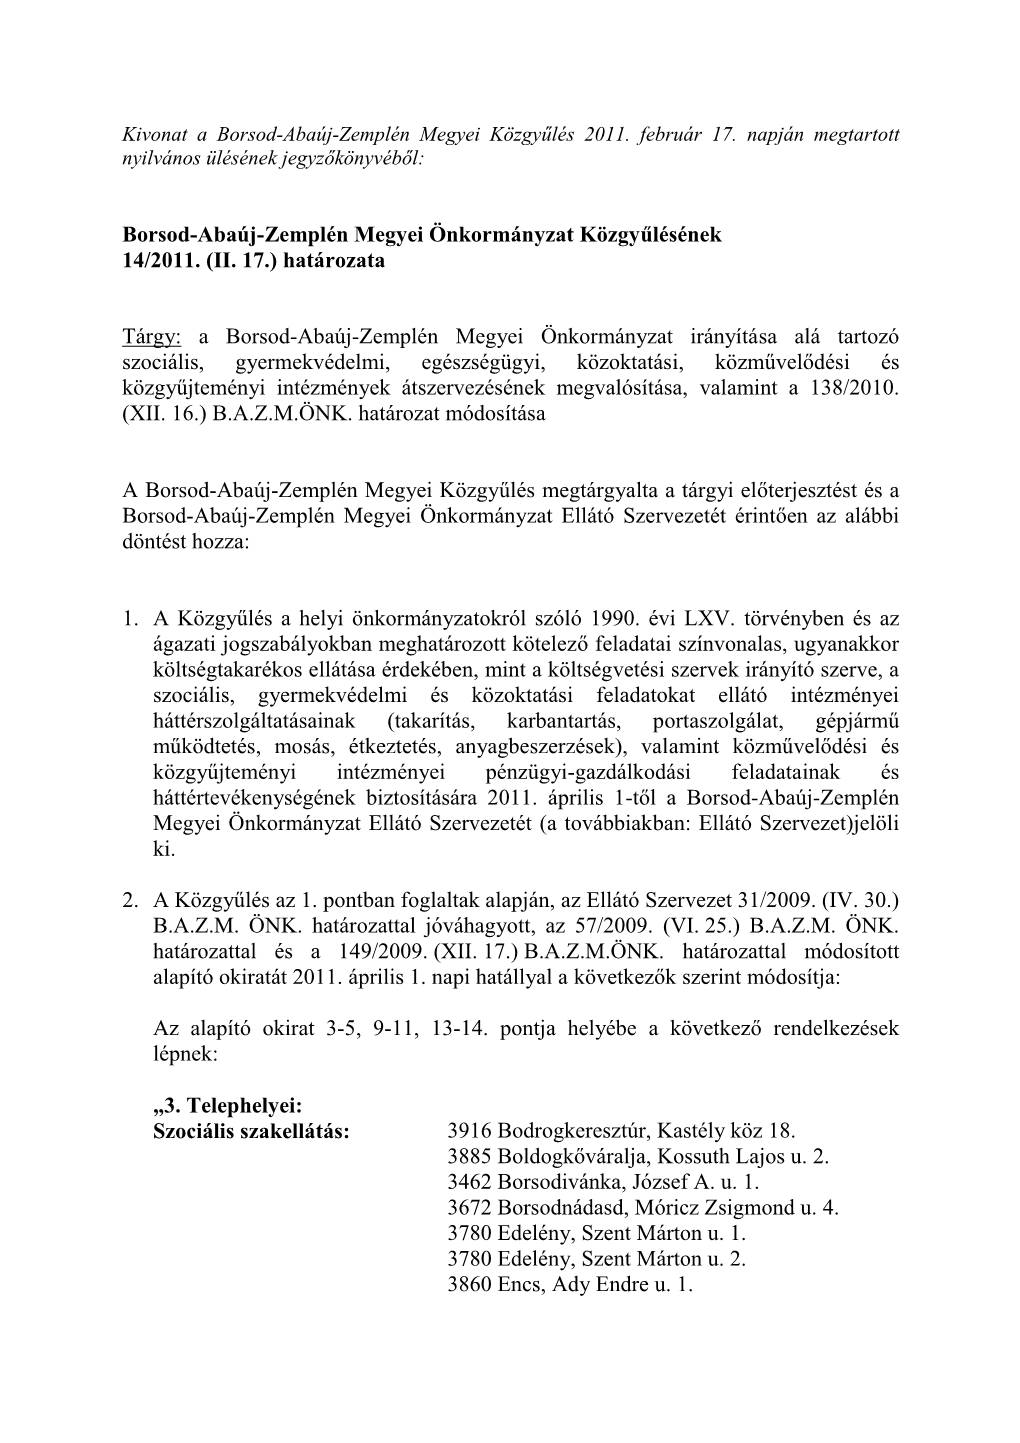 Borsod-Abaúj-Zemplén Megyei Önkormányzat Közgyűlésének 14